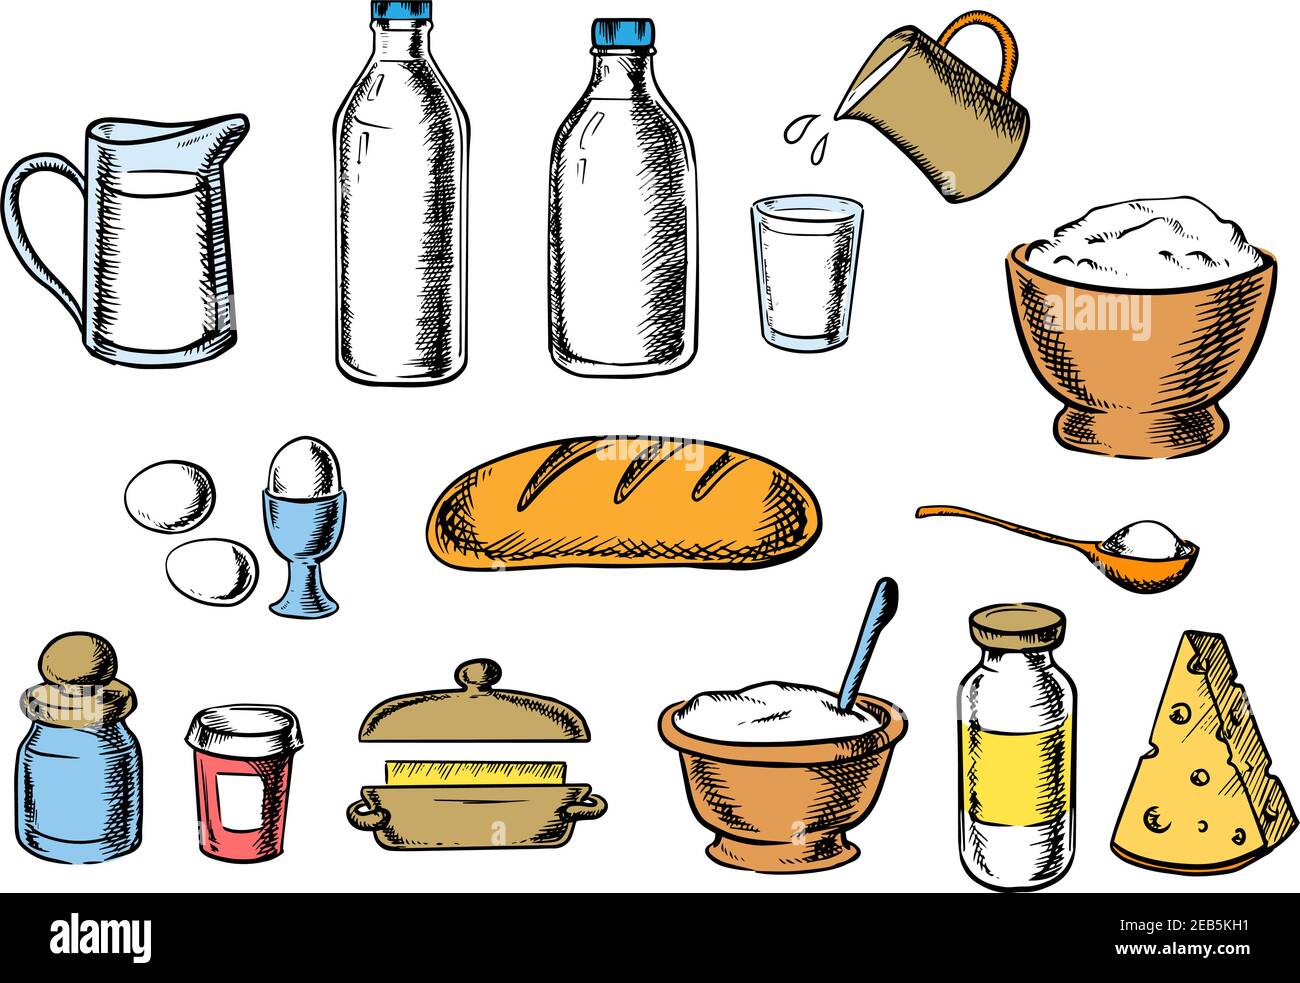 Design de boulangerie avec des ingrédients de pâte, y compris des contenants de beurre, de sel, de lait de sucre, d'oeufs, et de fromage autour d'un pain blanc Illustration de Vecteur